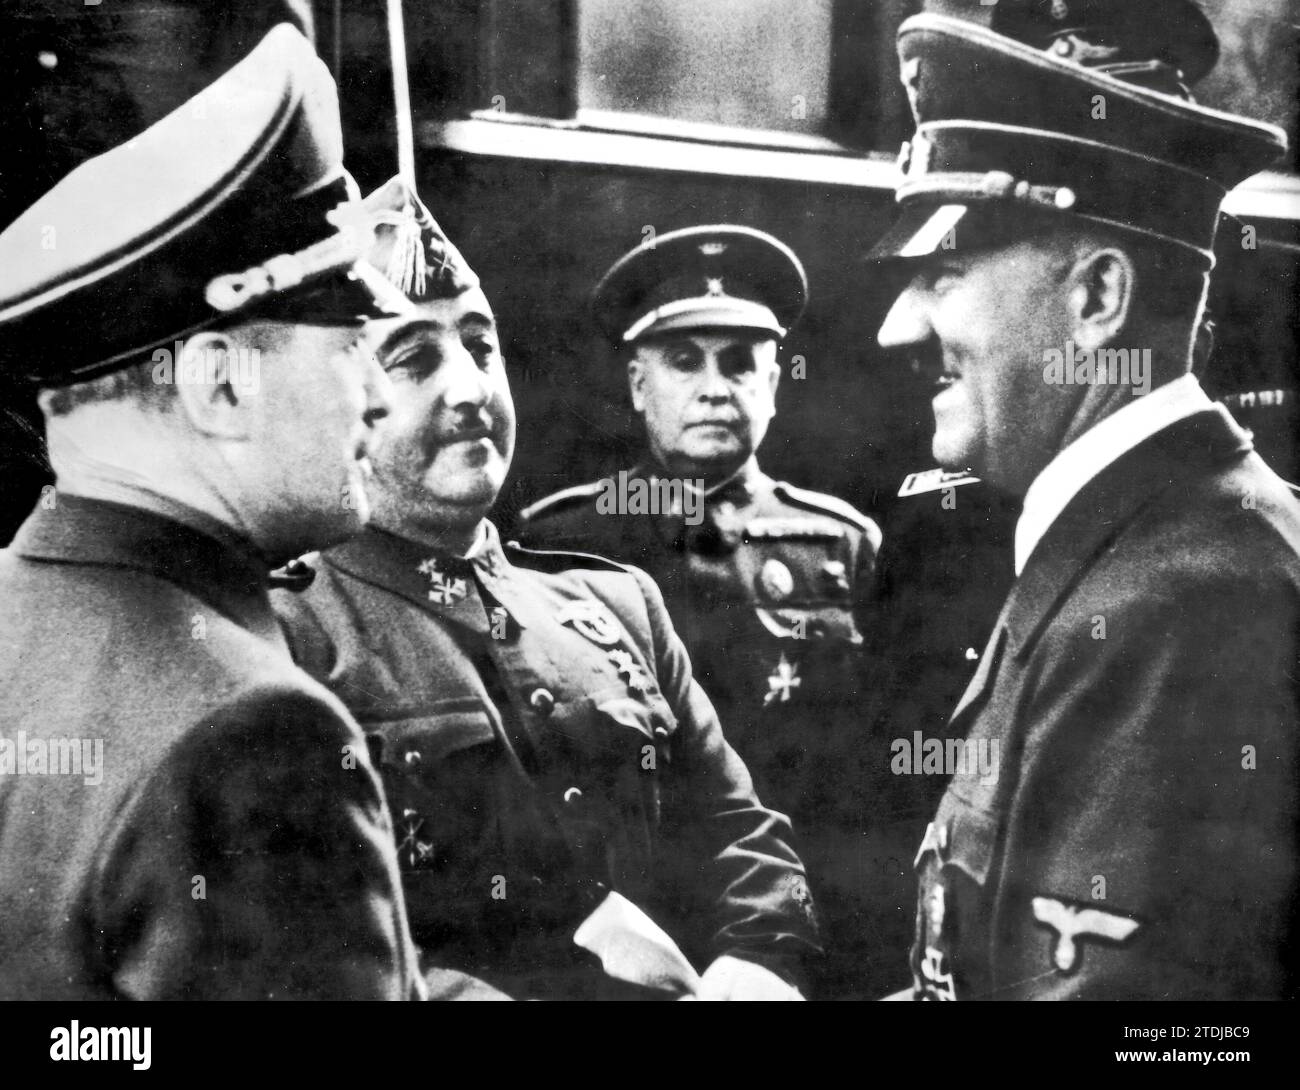 Hendaye (Frankreich). 10/23/1940. Erste Begrüßung zwischen Franco und Hitler in ihrem Interview in Hendaye, als der Staatsoberhaupt Spaniens auf französischem Boden ankam. Quelle: Album/Archivo ABC Stockfoto